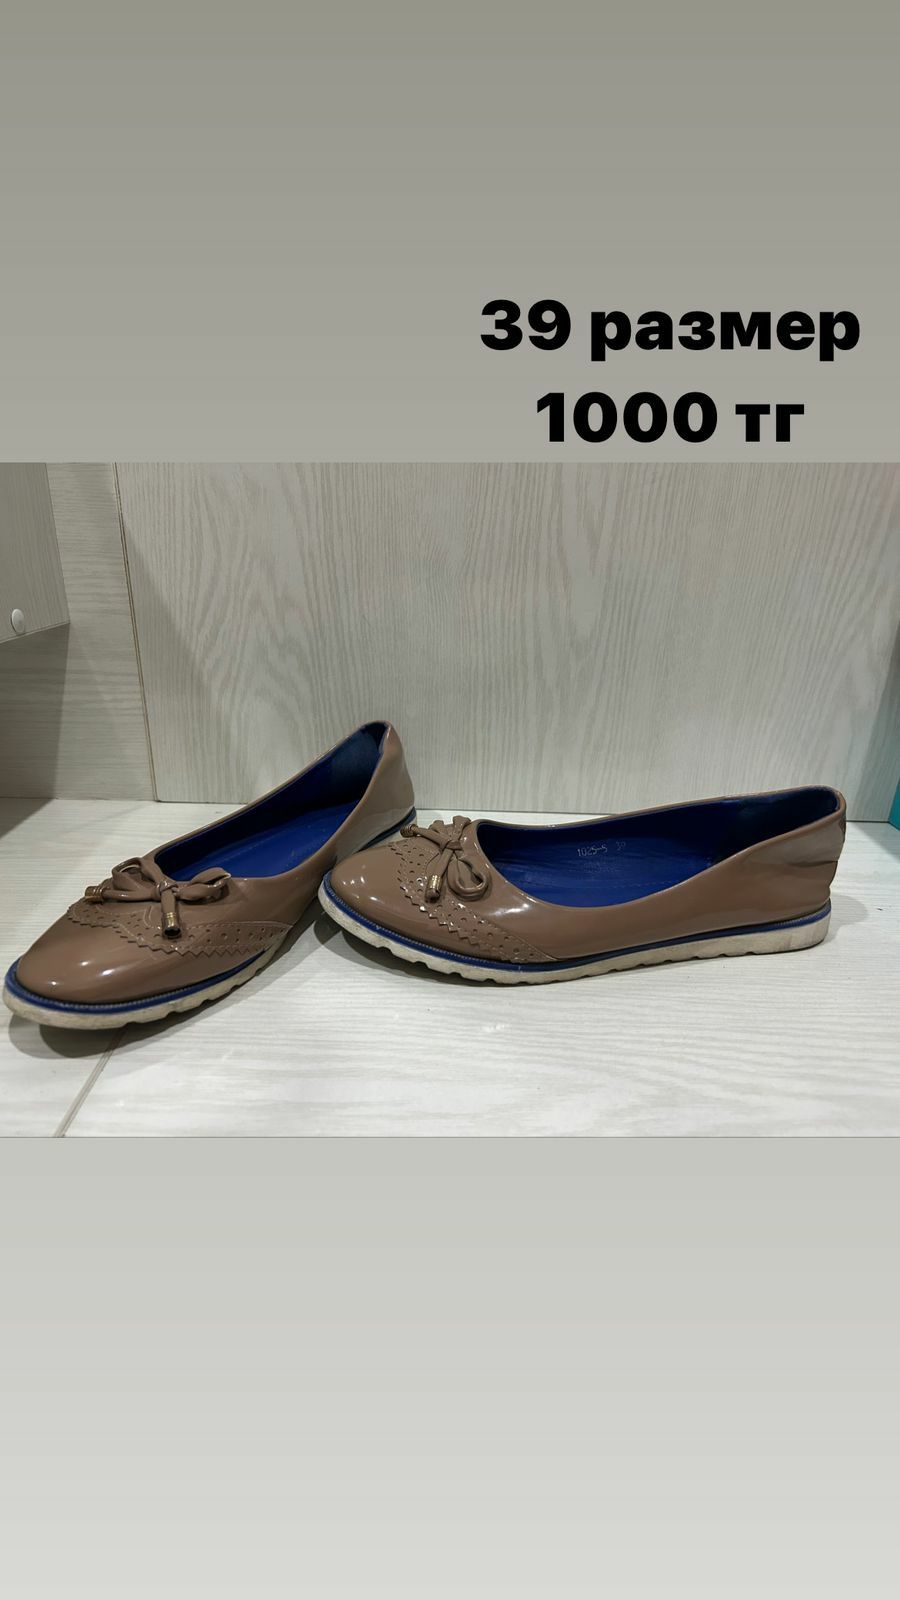 Продам женскую и детскую обувь